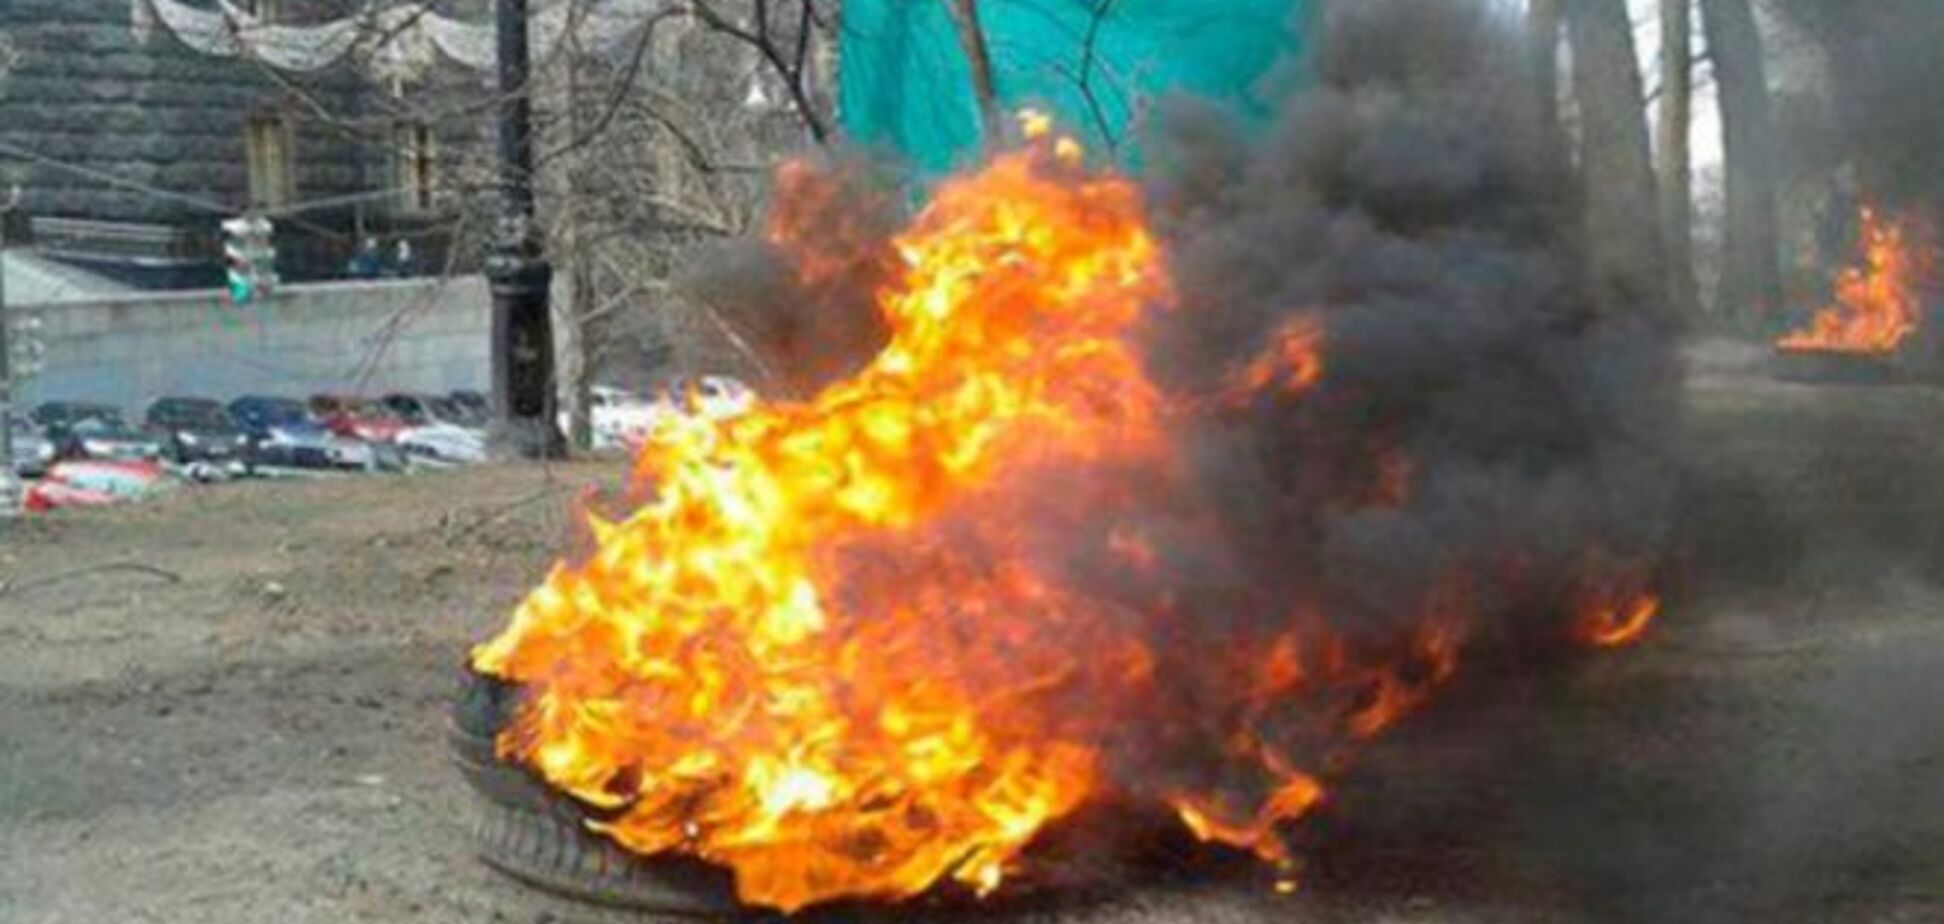 Під Кабміном підпалили шини - один протестуючий затриманий: фотозвіт